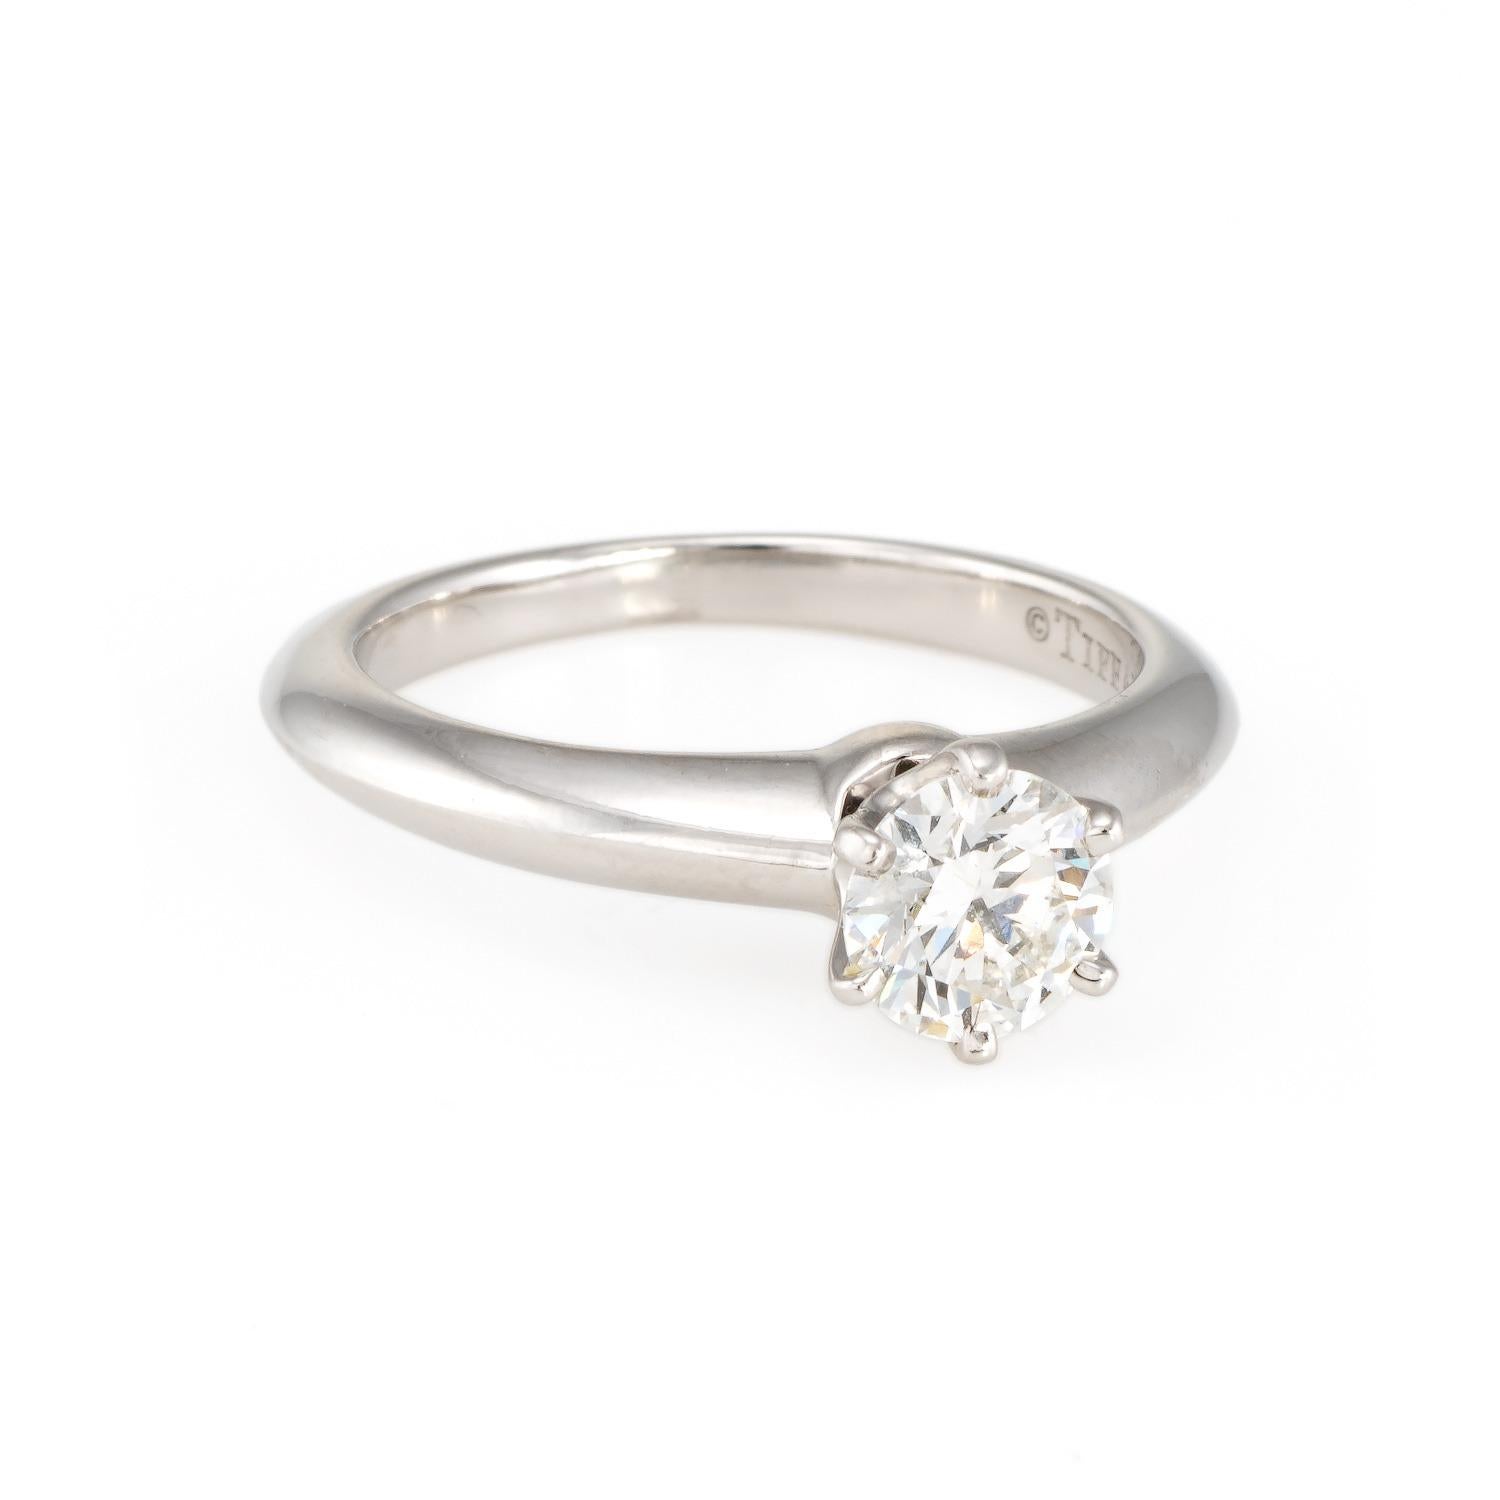 Élégante bague de fiançailles solitaire en diamant de Tiffany & Co, réalisée en platine 950. 

Le diamant rond de taille brillant mesure 5,56 - 5,59 x 3,36 mm (0,64 carats). Le diamant est de couleur F et de pureté SI1.

La bague classique 